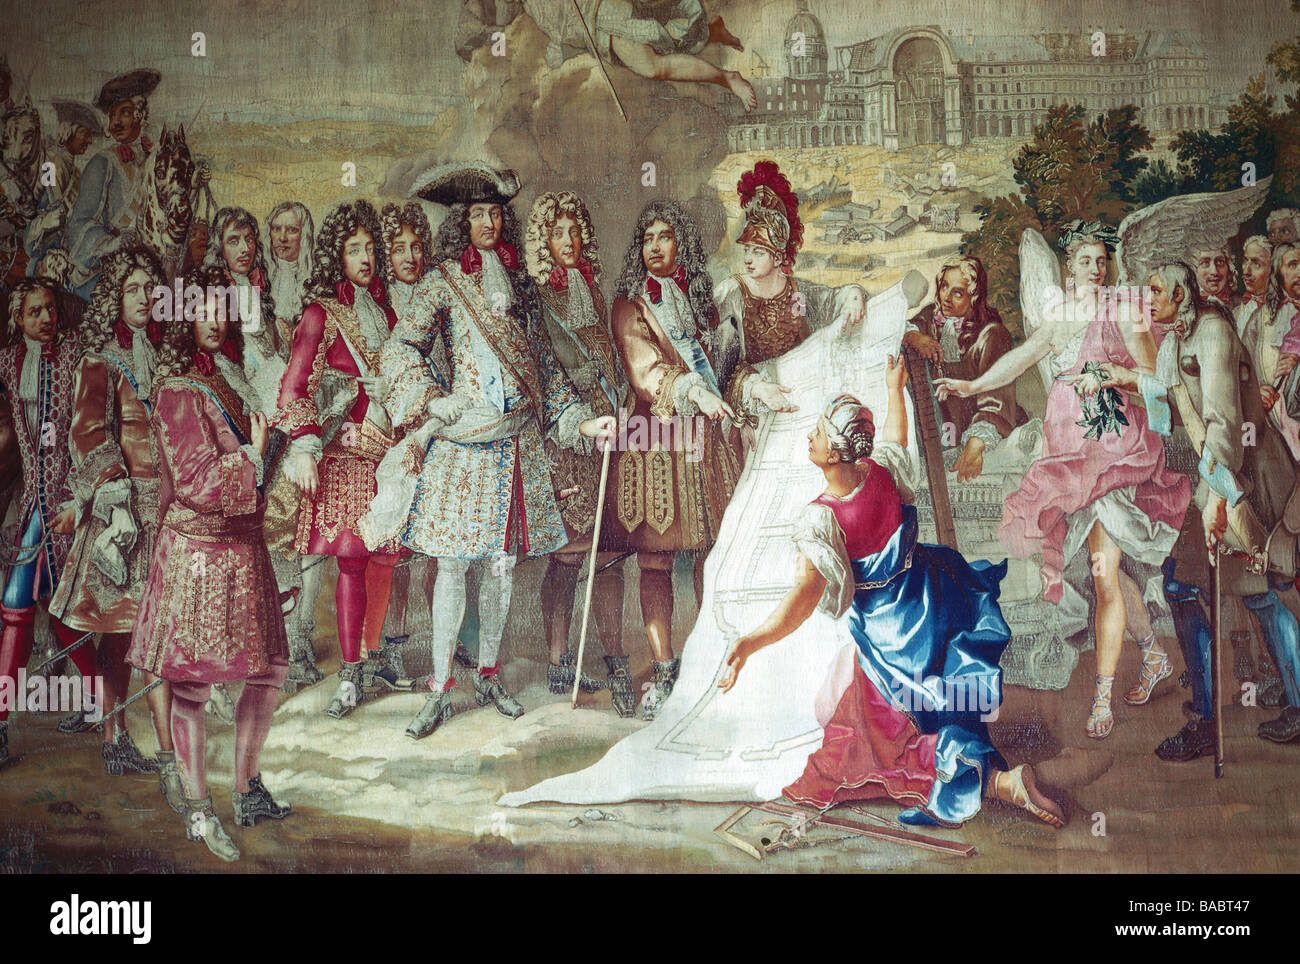 Louis XIV, 5.9.1638 - 1.9.1715, roi de France 14.5.1643 - 1.9.1715, pleine longueur, lors de la construction de l'Hôtel des Invalides à Paris, l'allégorie, tapisserie Gobelin, "Histoire du Roi', série 1716 - 1724, adaptée de la peinture par Pierre Dulin, 1674, château de Versailles, l'artiste n'a pas d'auteur pour être effacé Banque D'Images